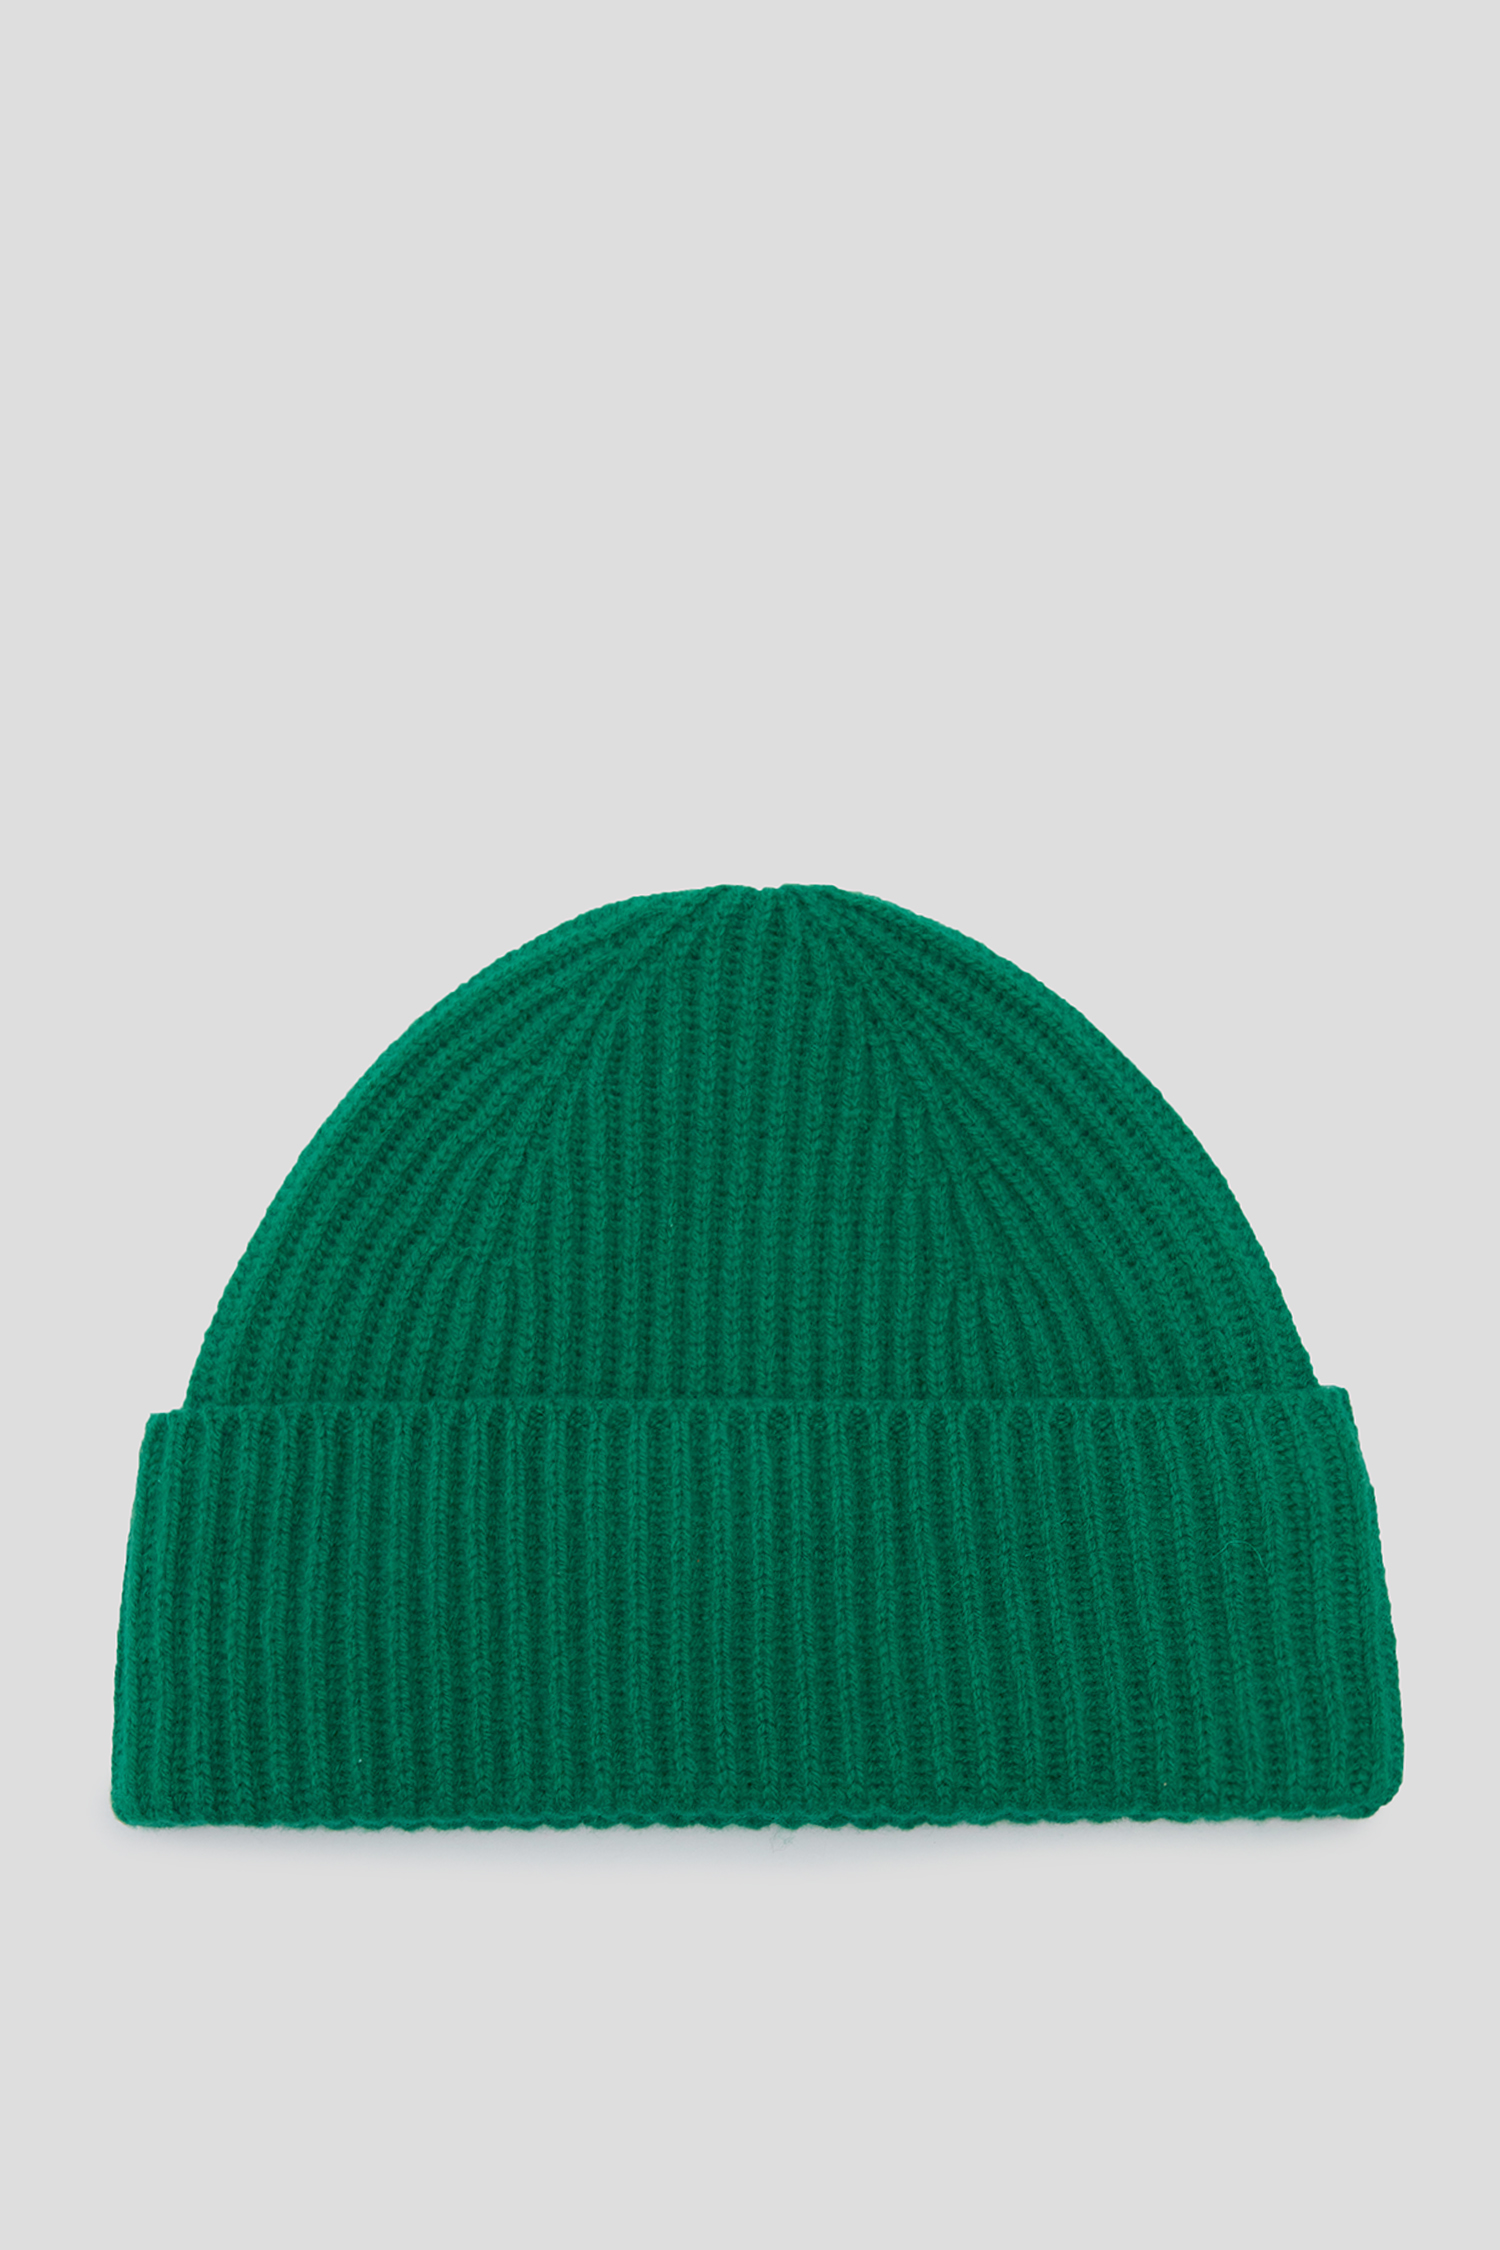 Жіноча зелена вовняна шапка 1